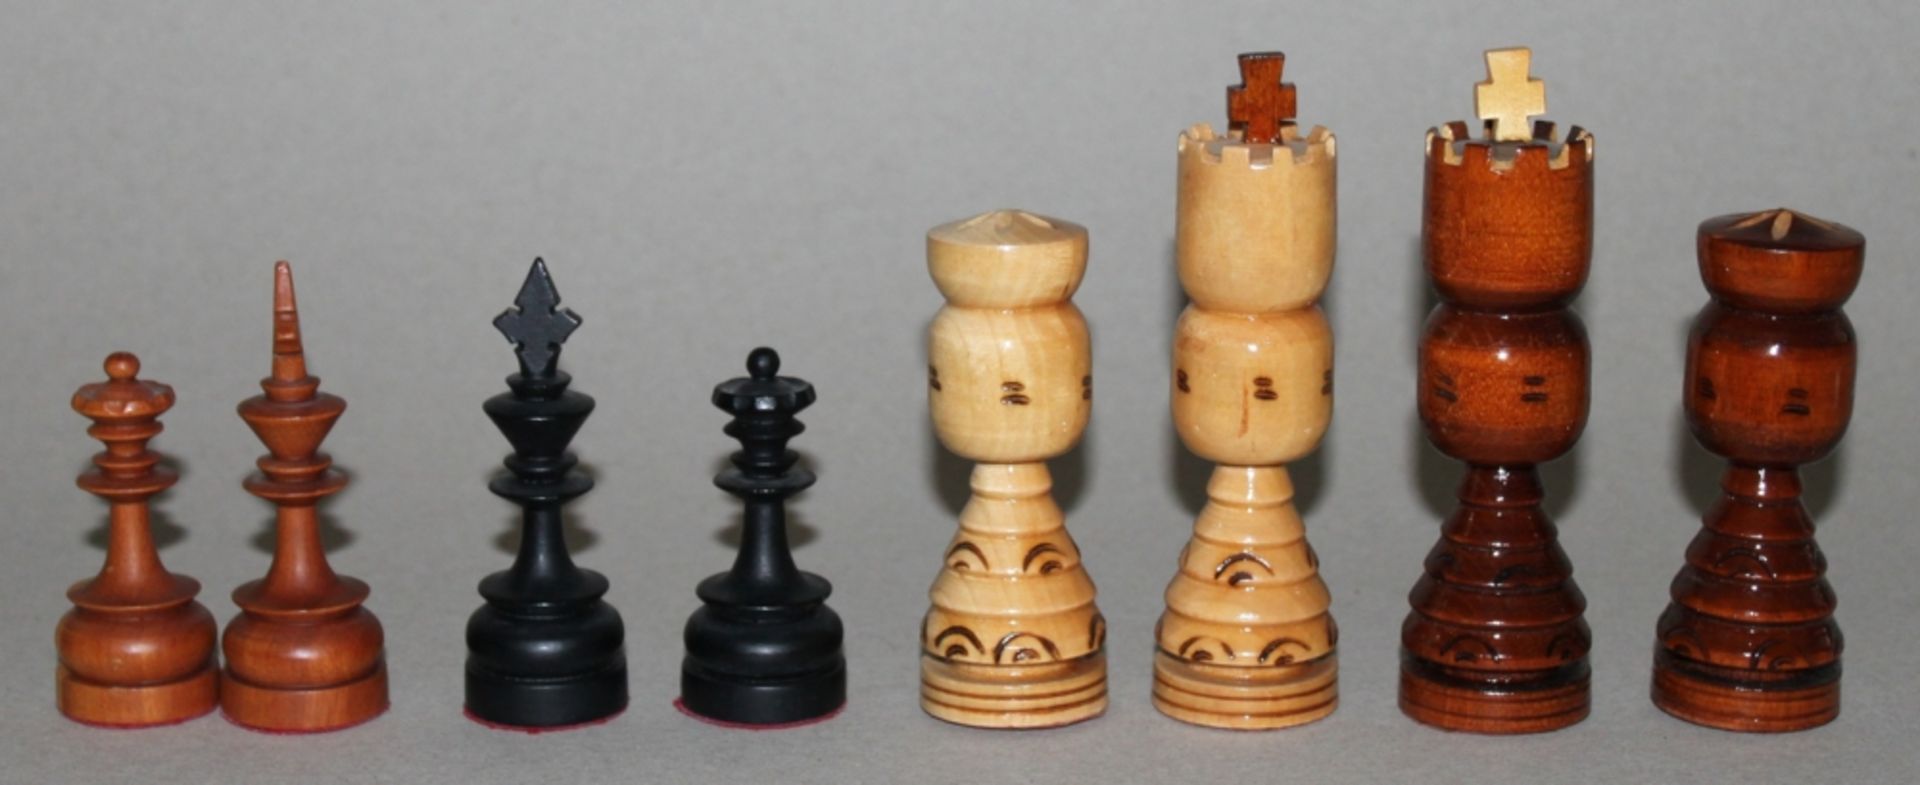 Europa. Russland. Schachfiguren im Stil der russischen Volkskunst aus Holz mit klappbaren